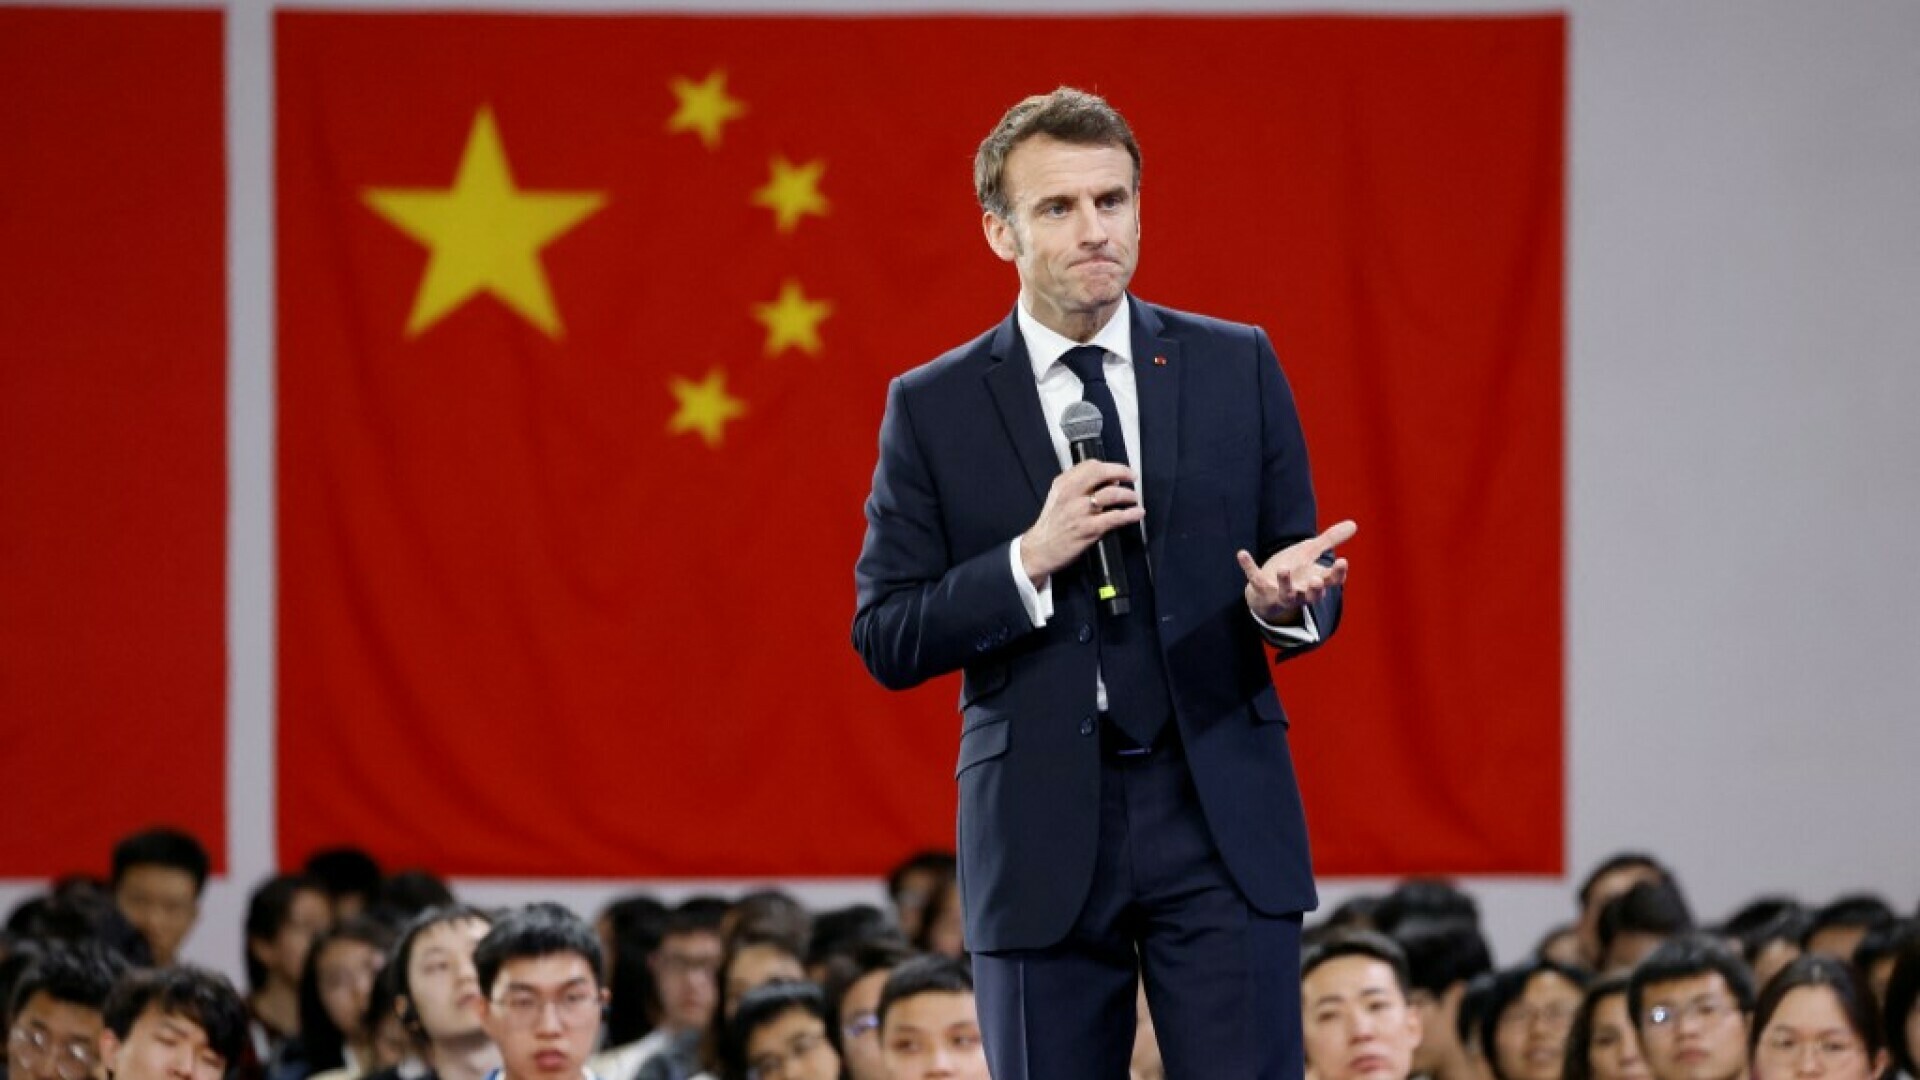 Macron protiv eskalacije sukoba između Kine i Tajvane: “Najgore bi bilo misliti da se mi Europljani moramo prilagođavati američkom ritmu ili kineskom pretjerivanju”